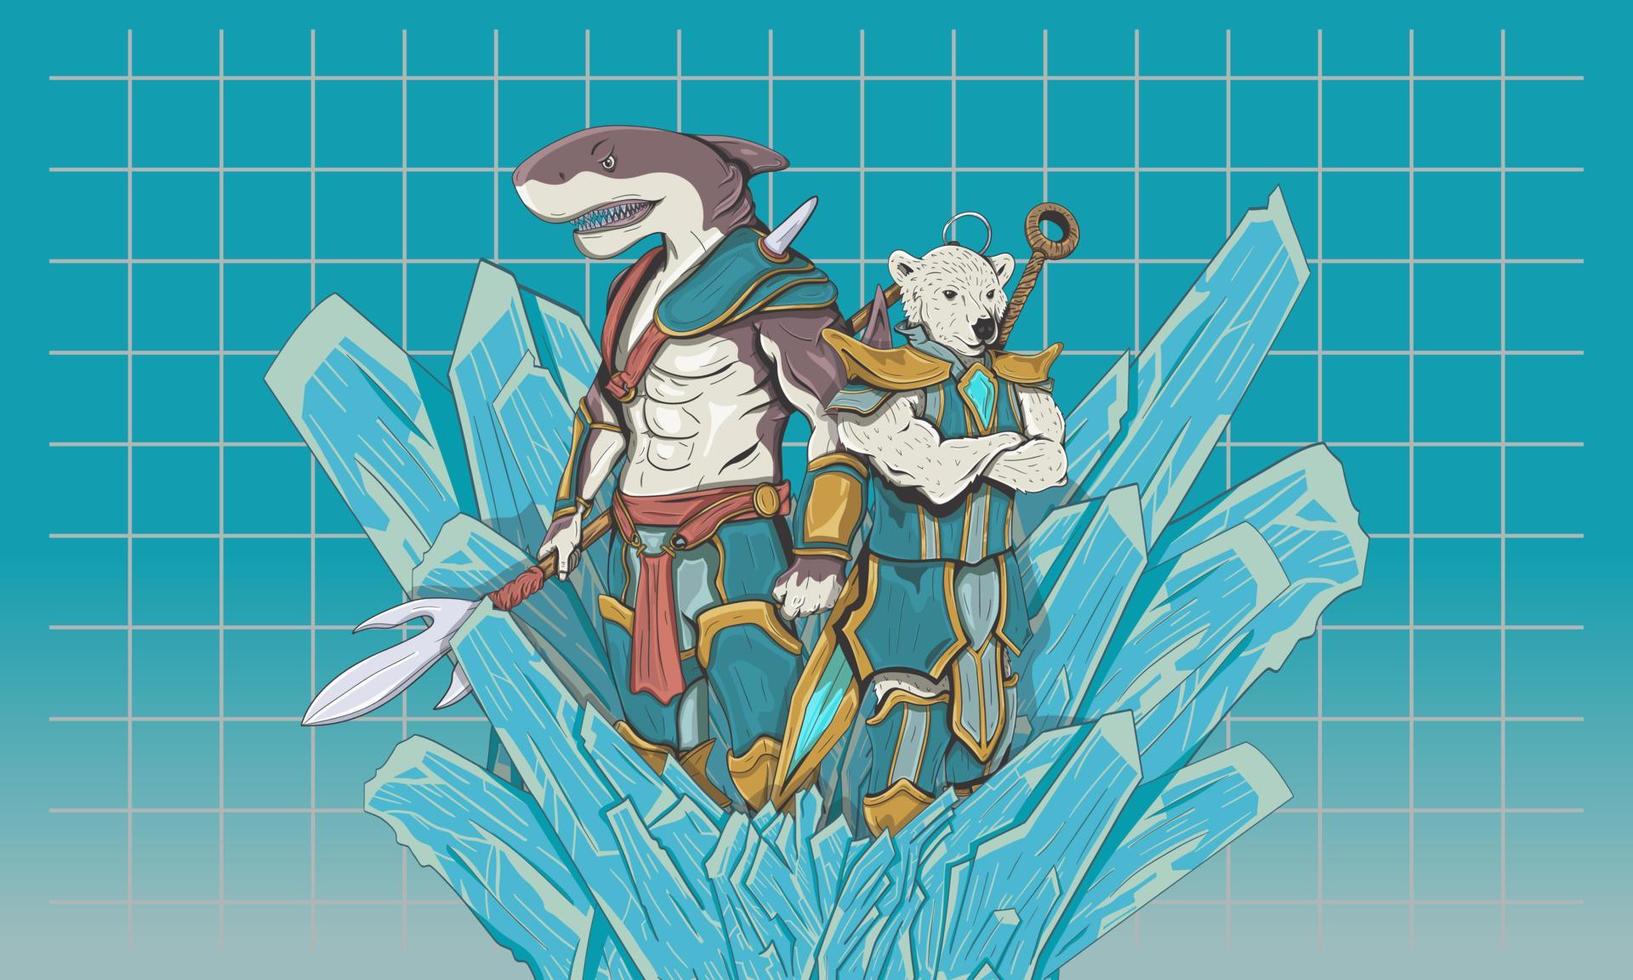 grande squalo bianco e guerrieri mutanti dell'orso di ghiaccio sull'iceberg. schizzo disegnato a mano. illustrazione vettoriale incisa per carta da parati, t-shirt, mascotte, gioco o nft